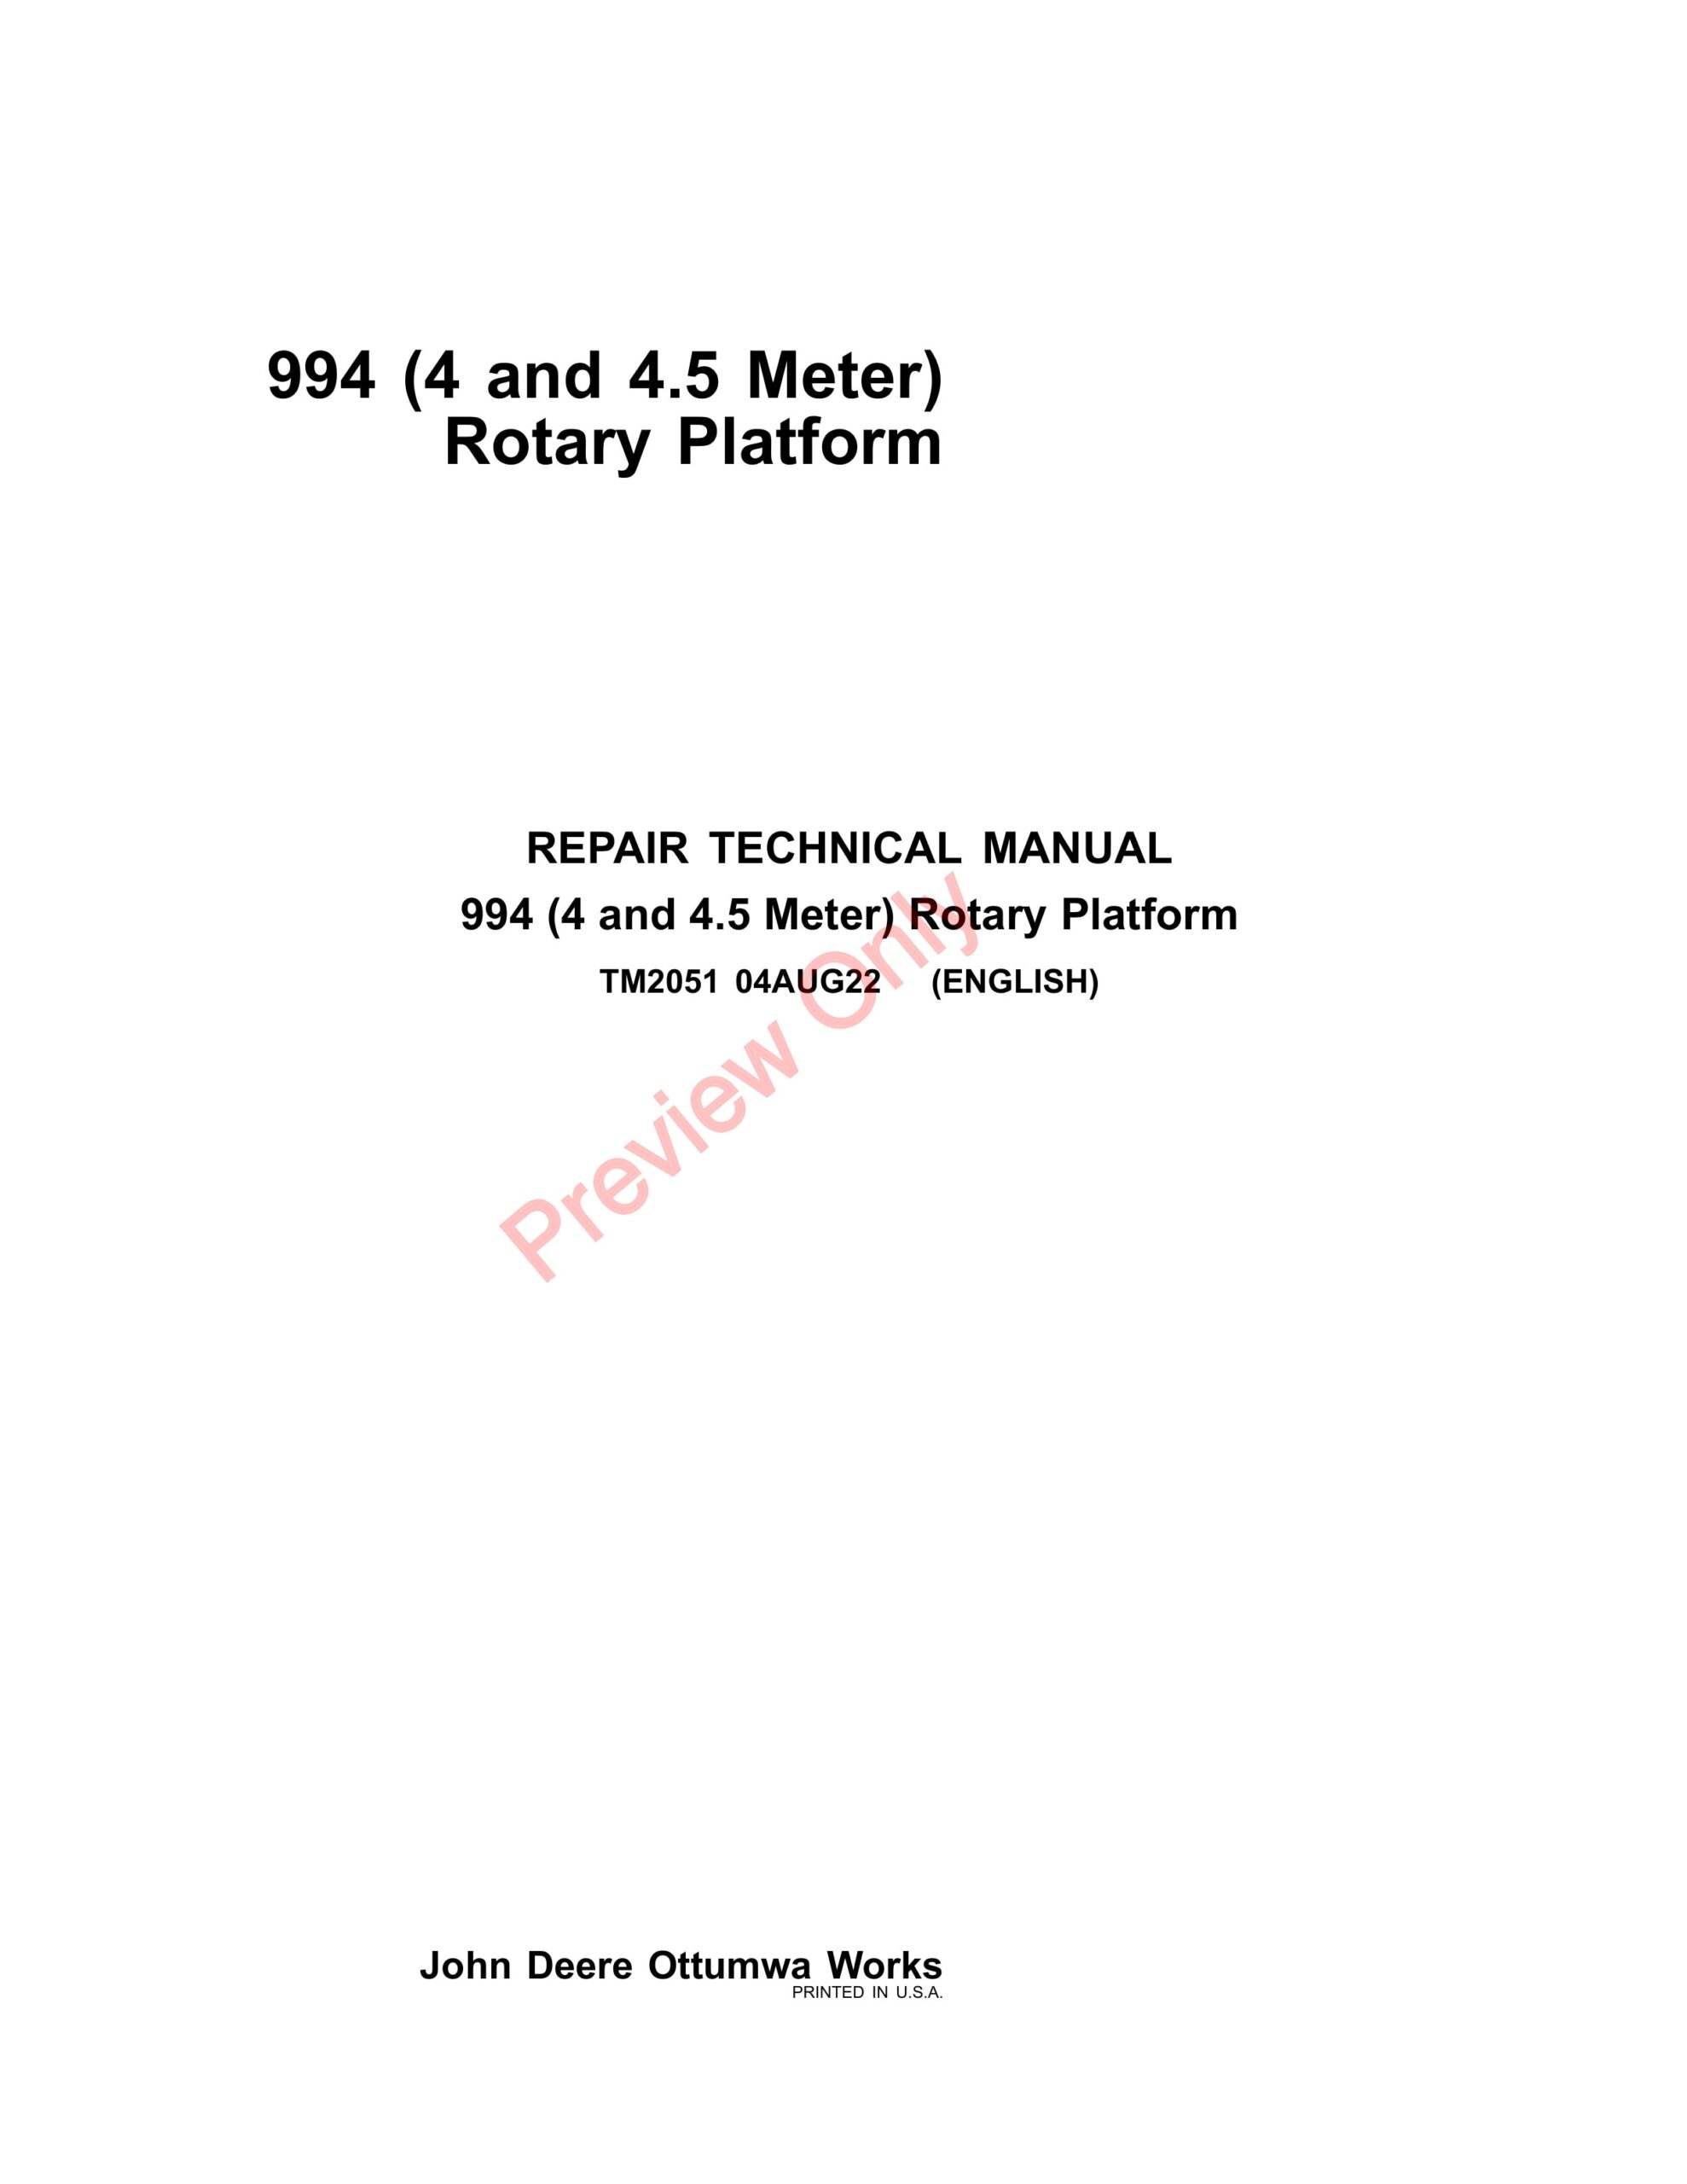 John Deere 994 Rotary Platform 4 Meter and 4.5 Meter Repair Technical Manual TM2051 04AUG22-1